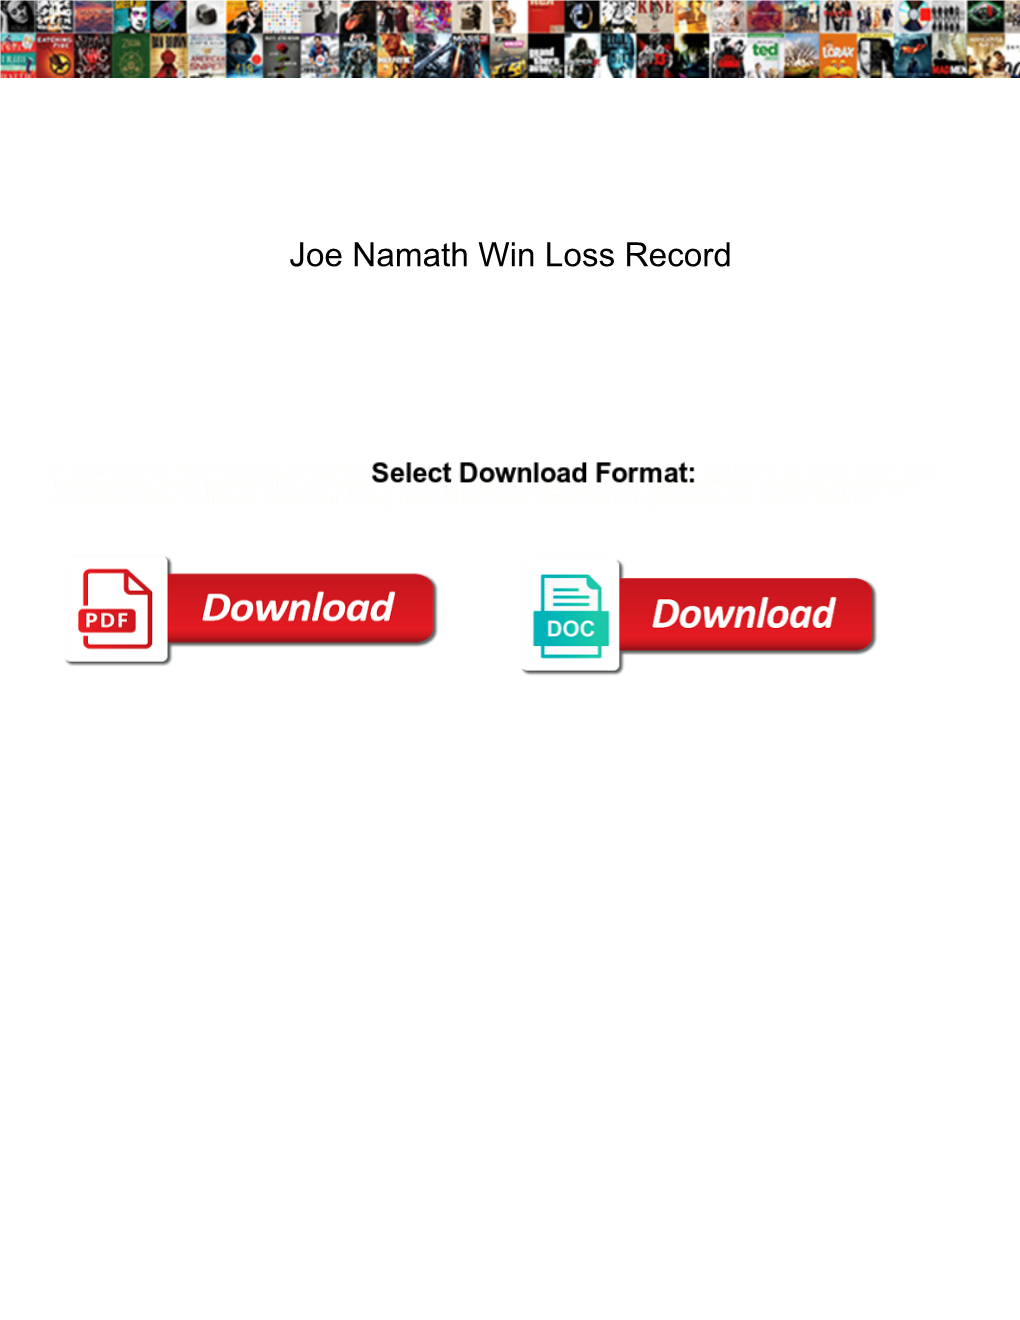 Joe Namath Win Loss Record